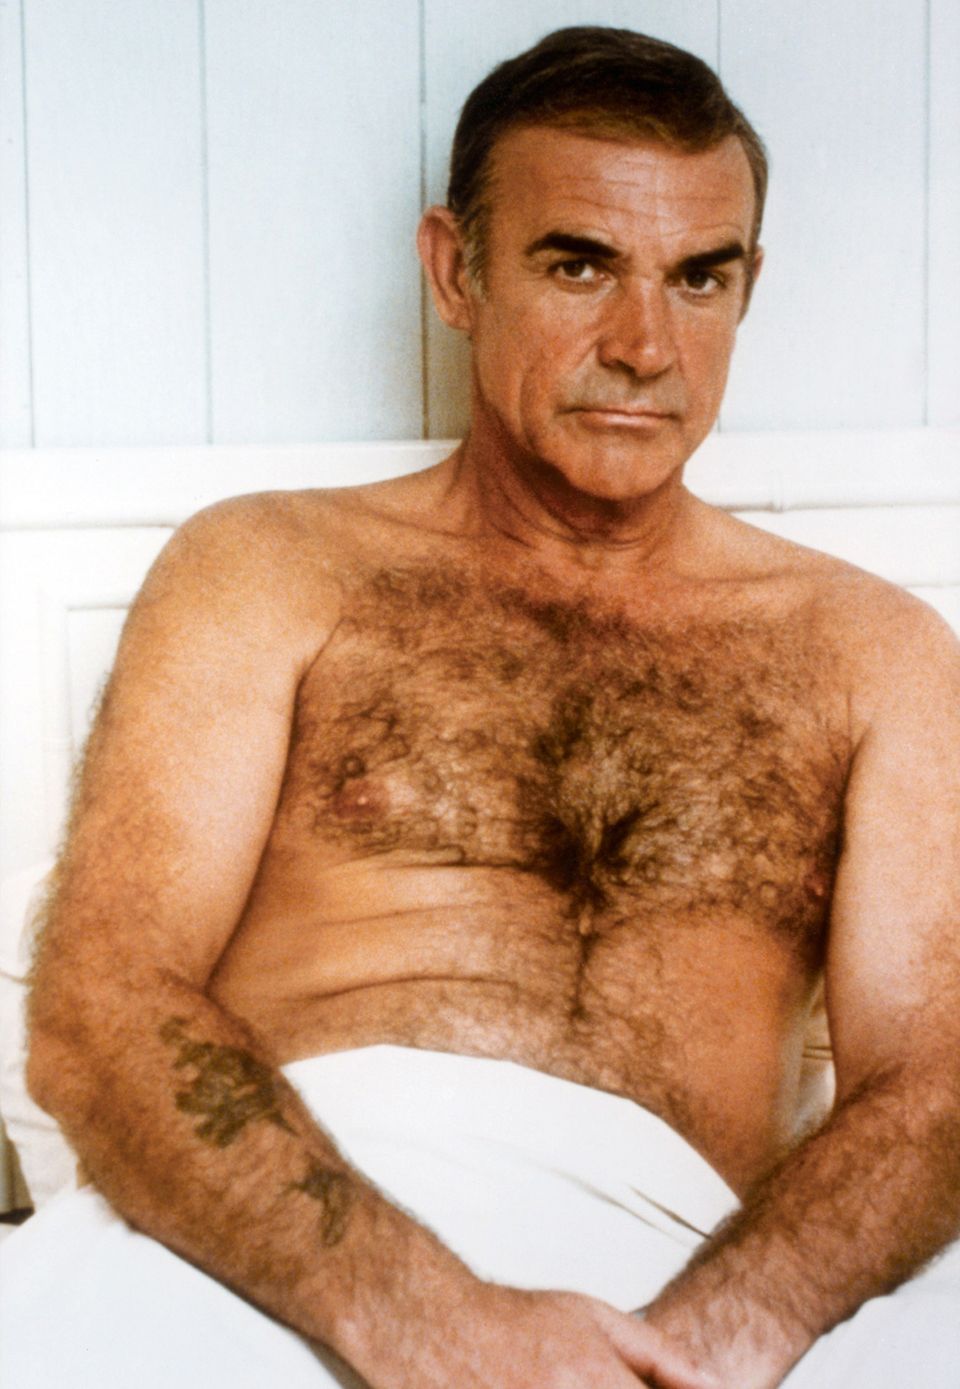 Für viele verkörpert er den Geheimagenten "James Bond" am besten. Der Schauspieler Sean Connery hat seinen Gentleman-Charme von damals bis heute nicht verloren.